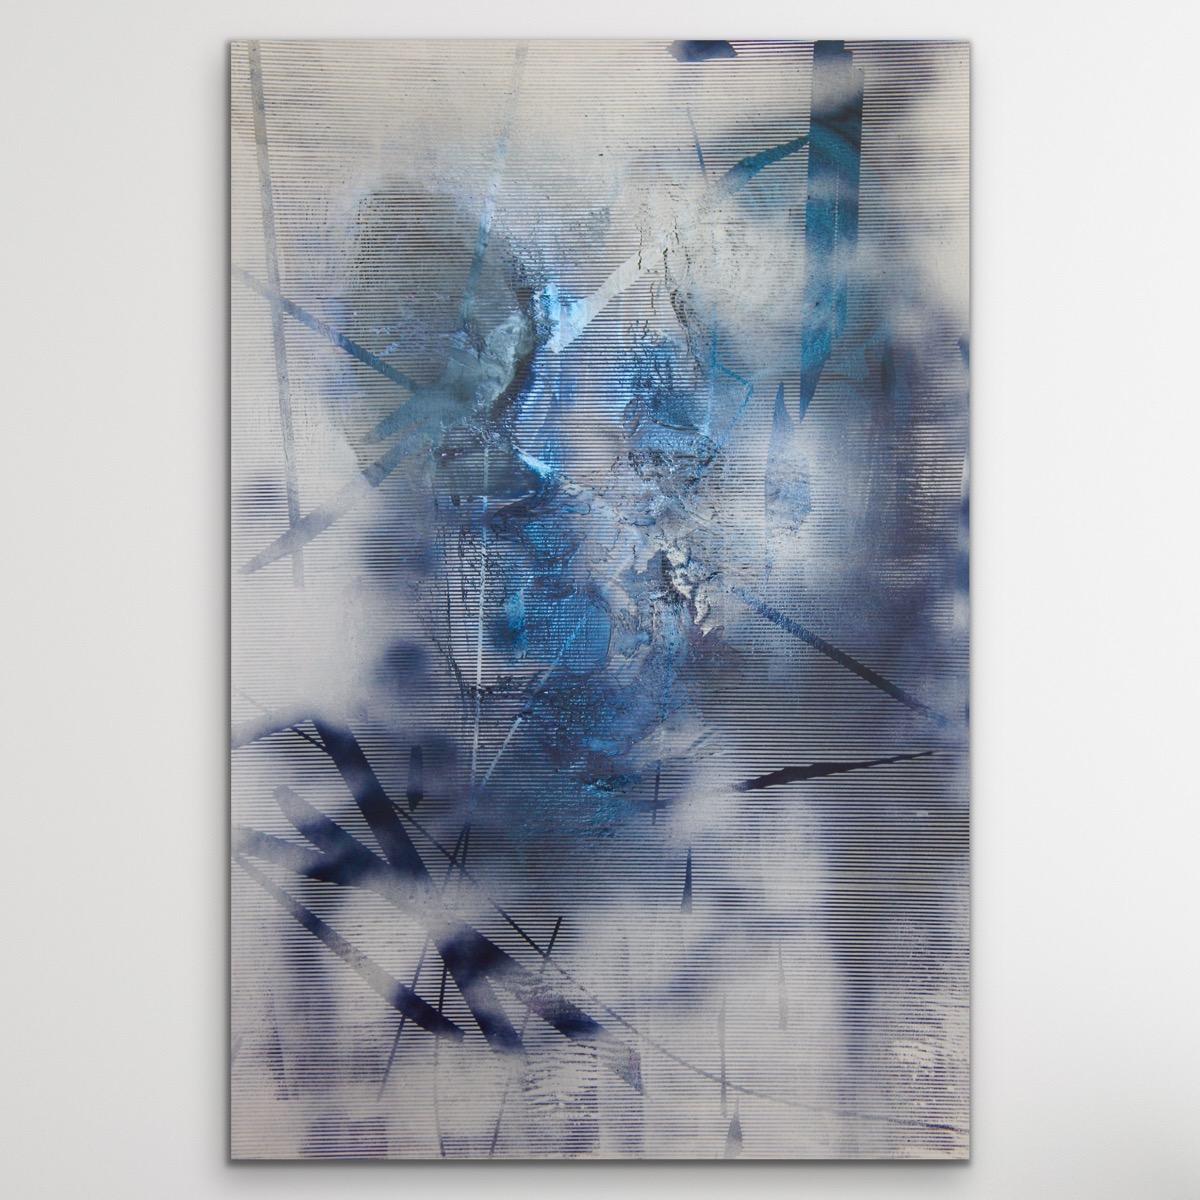 Écran tbd4 (grille abstraite peinture contemporaine bleu blanc art atmosphérique) - Mixed Media Art de Melisa Taylor Metzger